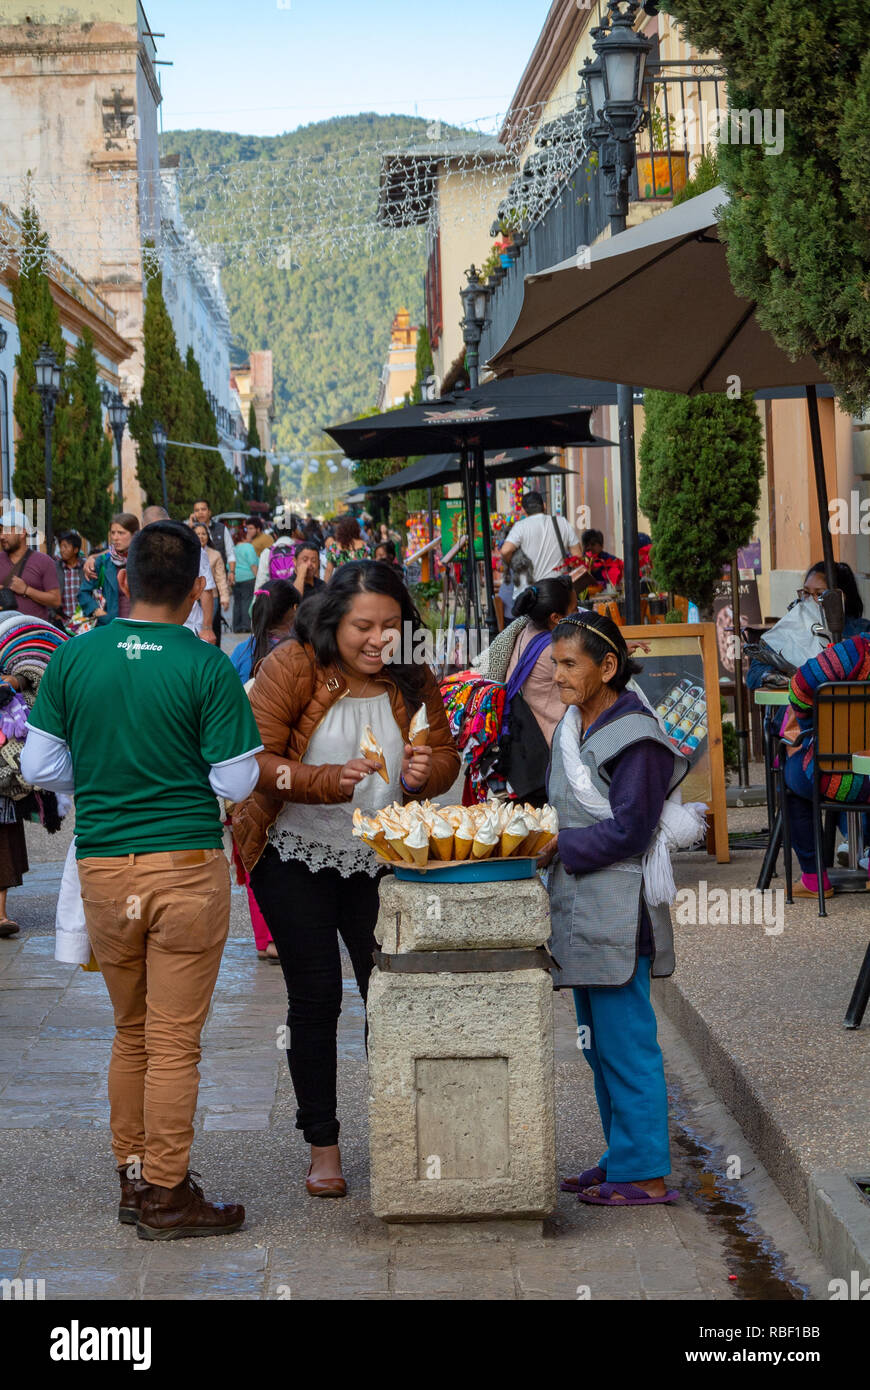 Empaquetado y colorida fruta fresca aparece en un carro de los vendedores  callejeros de la Ciudad de México Fotografía de stock - Alamy